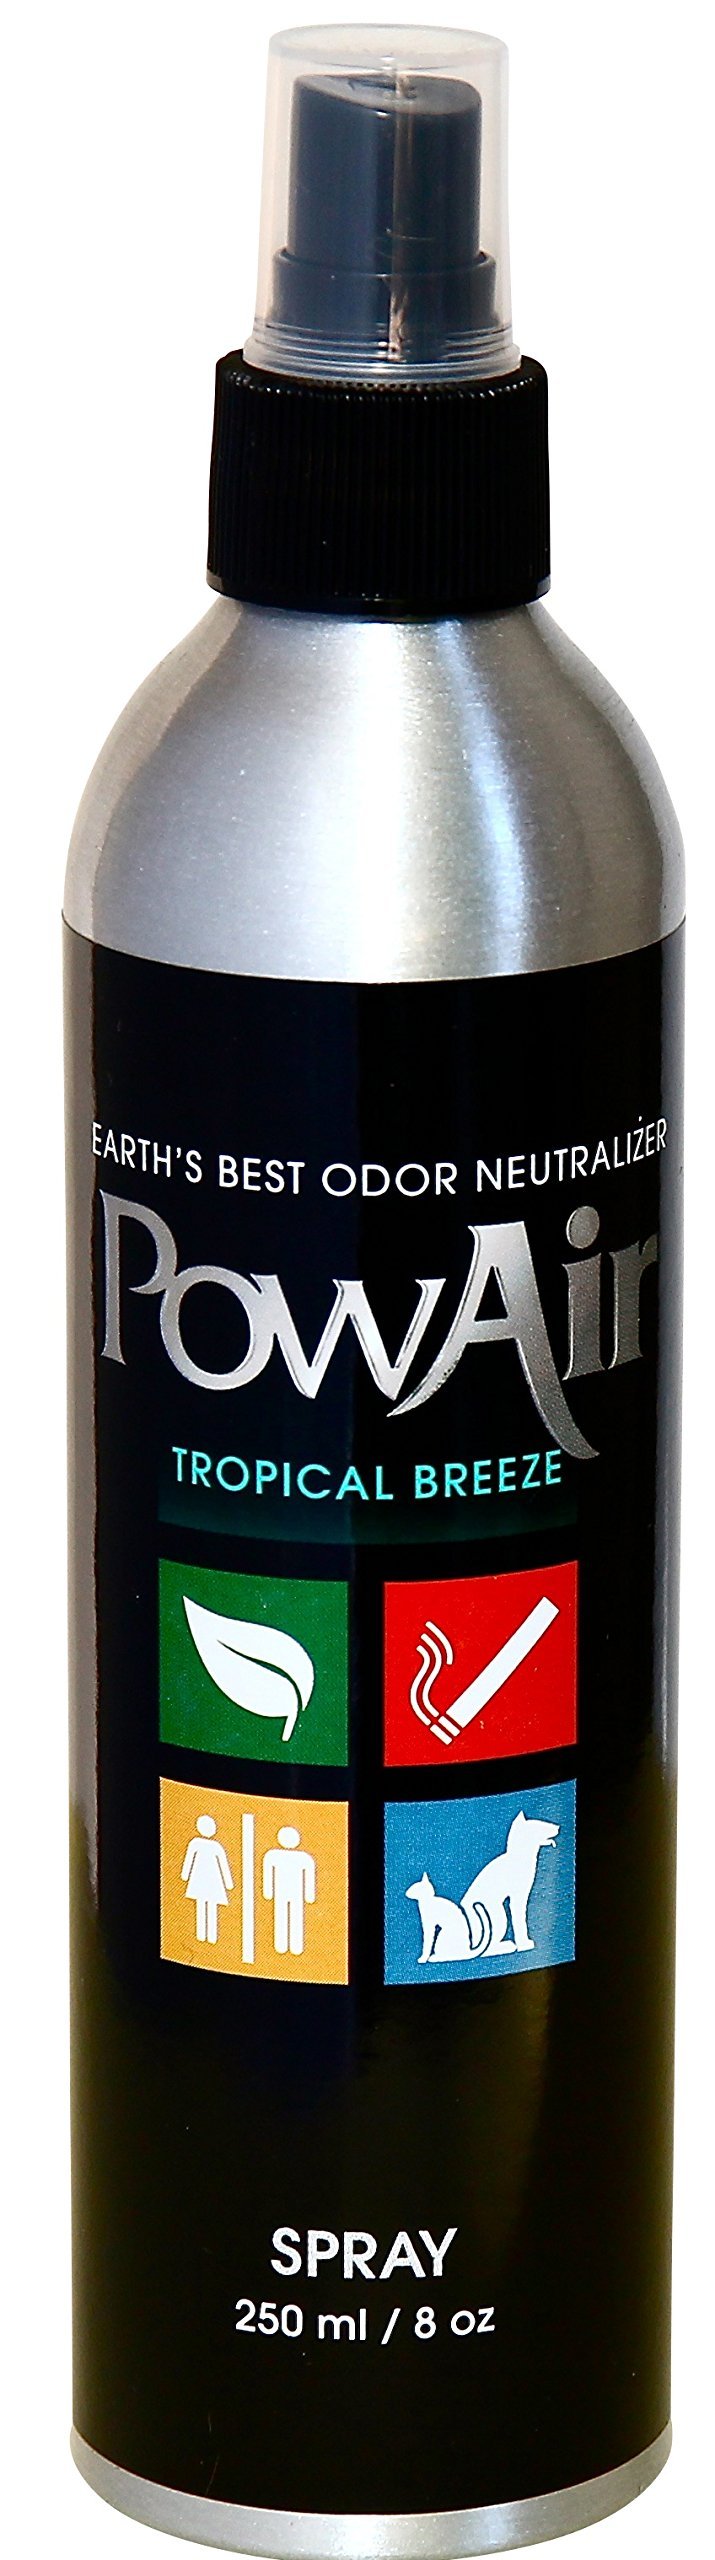 [Australia] - PowAir Tropical Breeze Odor Neutralizer Spray 